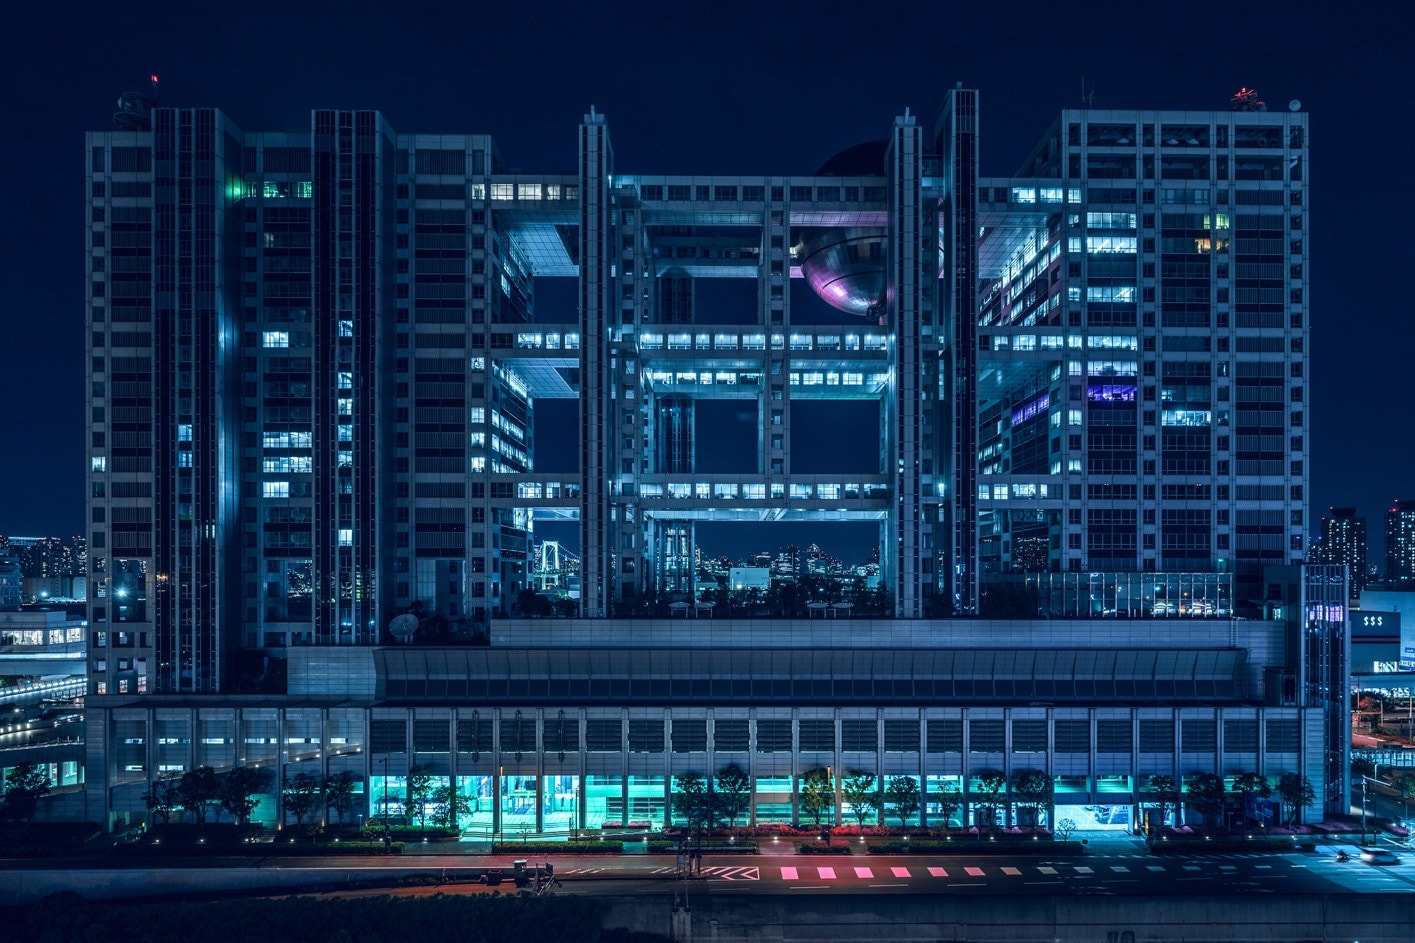 『ブレードランナー』の世界観で切り取られたSF感満載の景色 見慣れた夜の東京と著名建築に対して新たな視点をもたらす日本人必見のフォトセット 江戸東京博物館 フジテレビ 本社ビル スーパードライホール 東京ビッグサイト